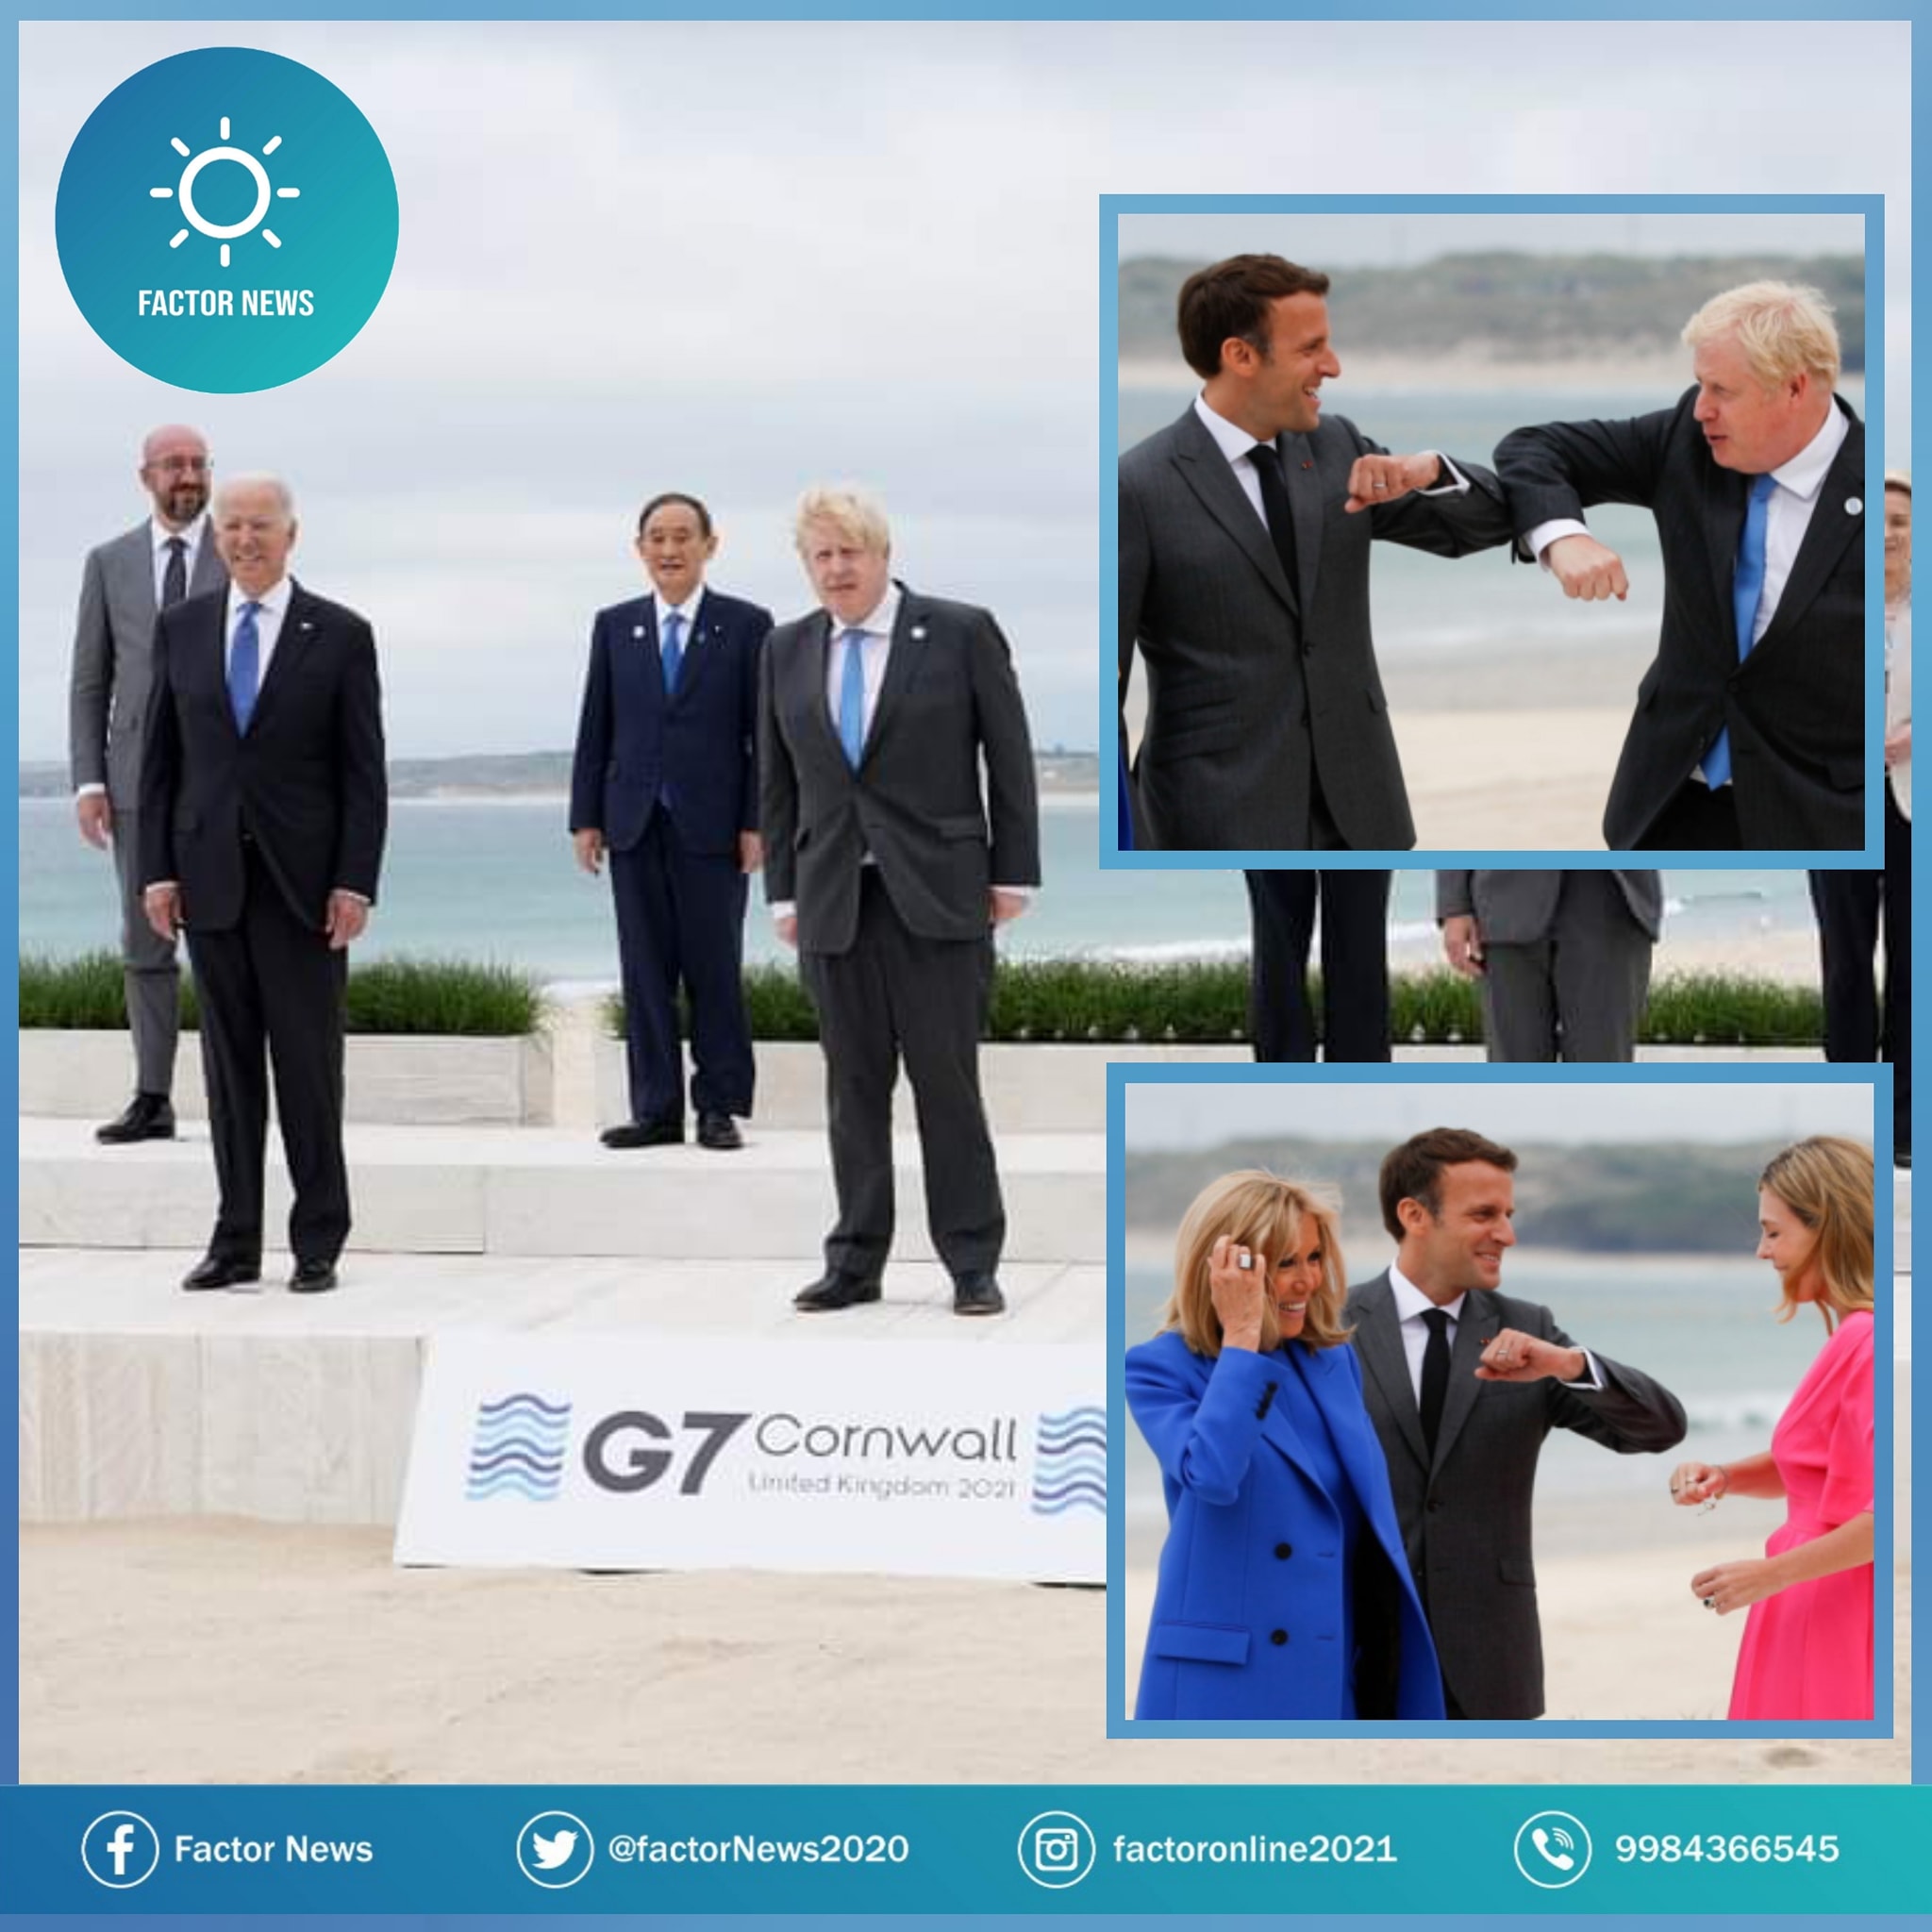 Líderes del mundo (G7) se toman la foto con sana distancia pero ya sin Cubrebocas.